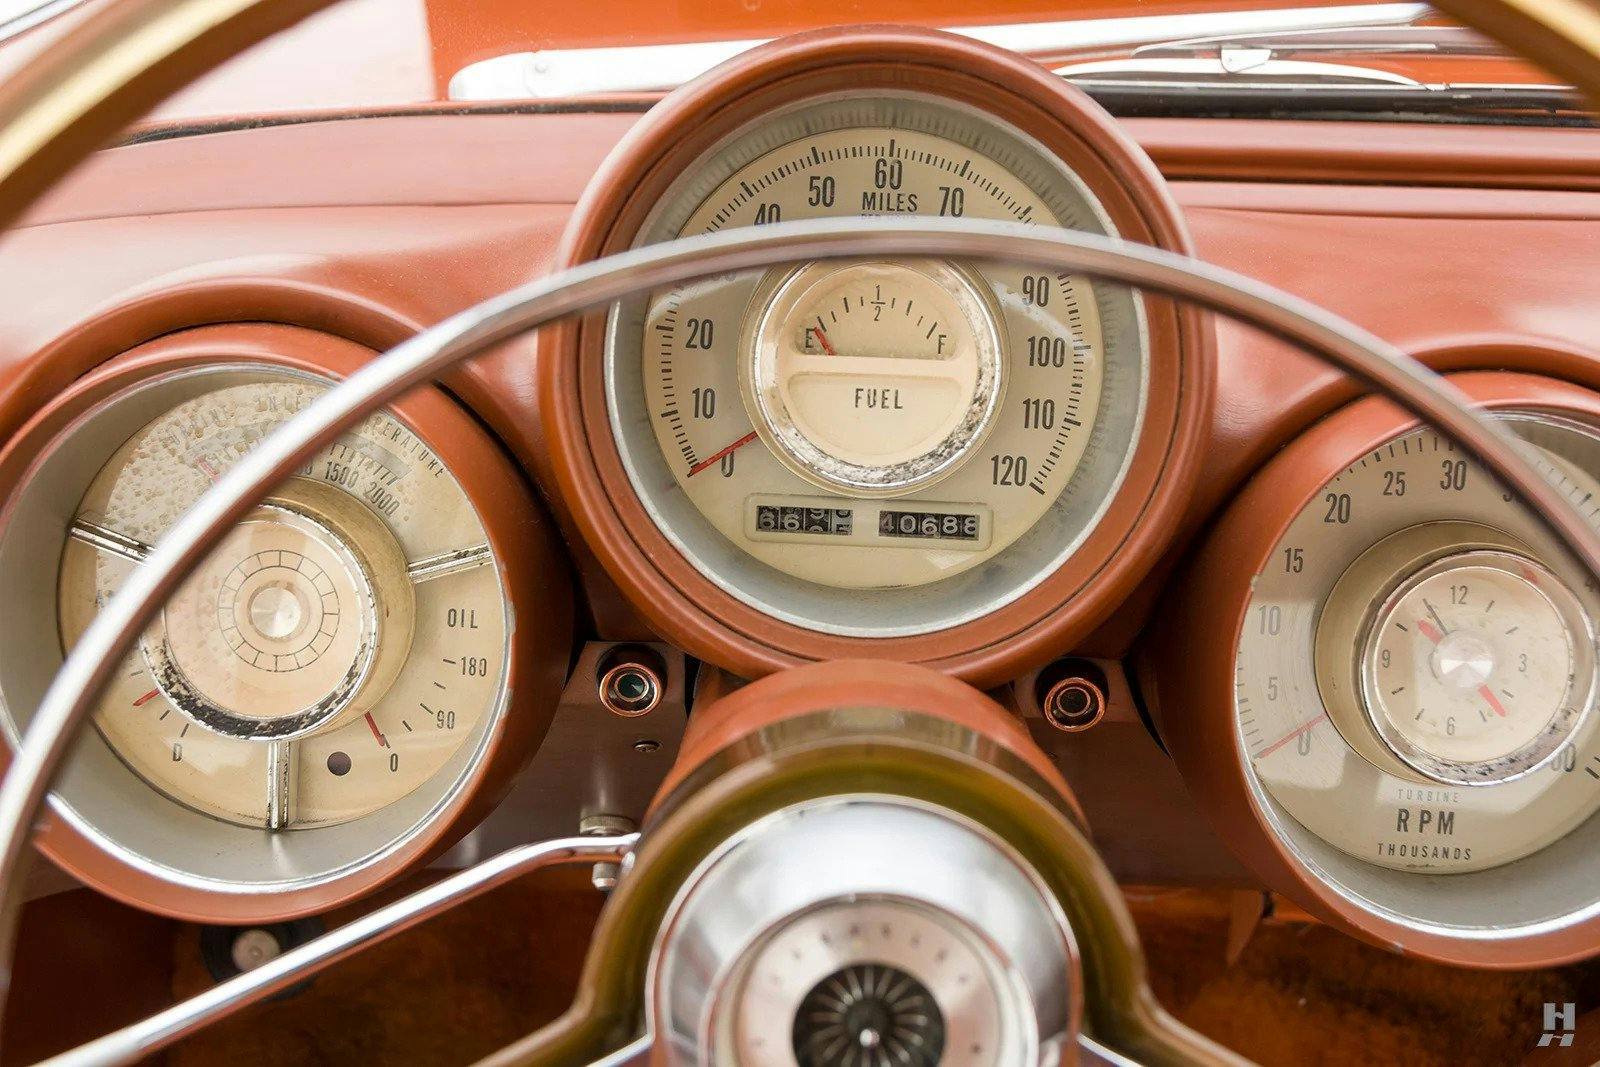 1963 Chrysler Turbine Car interior gauges